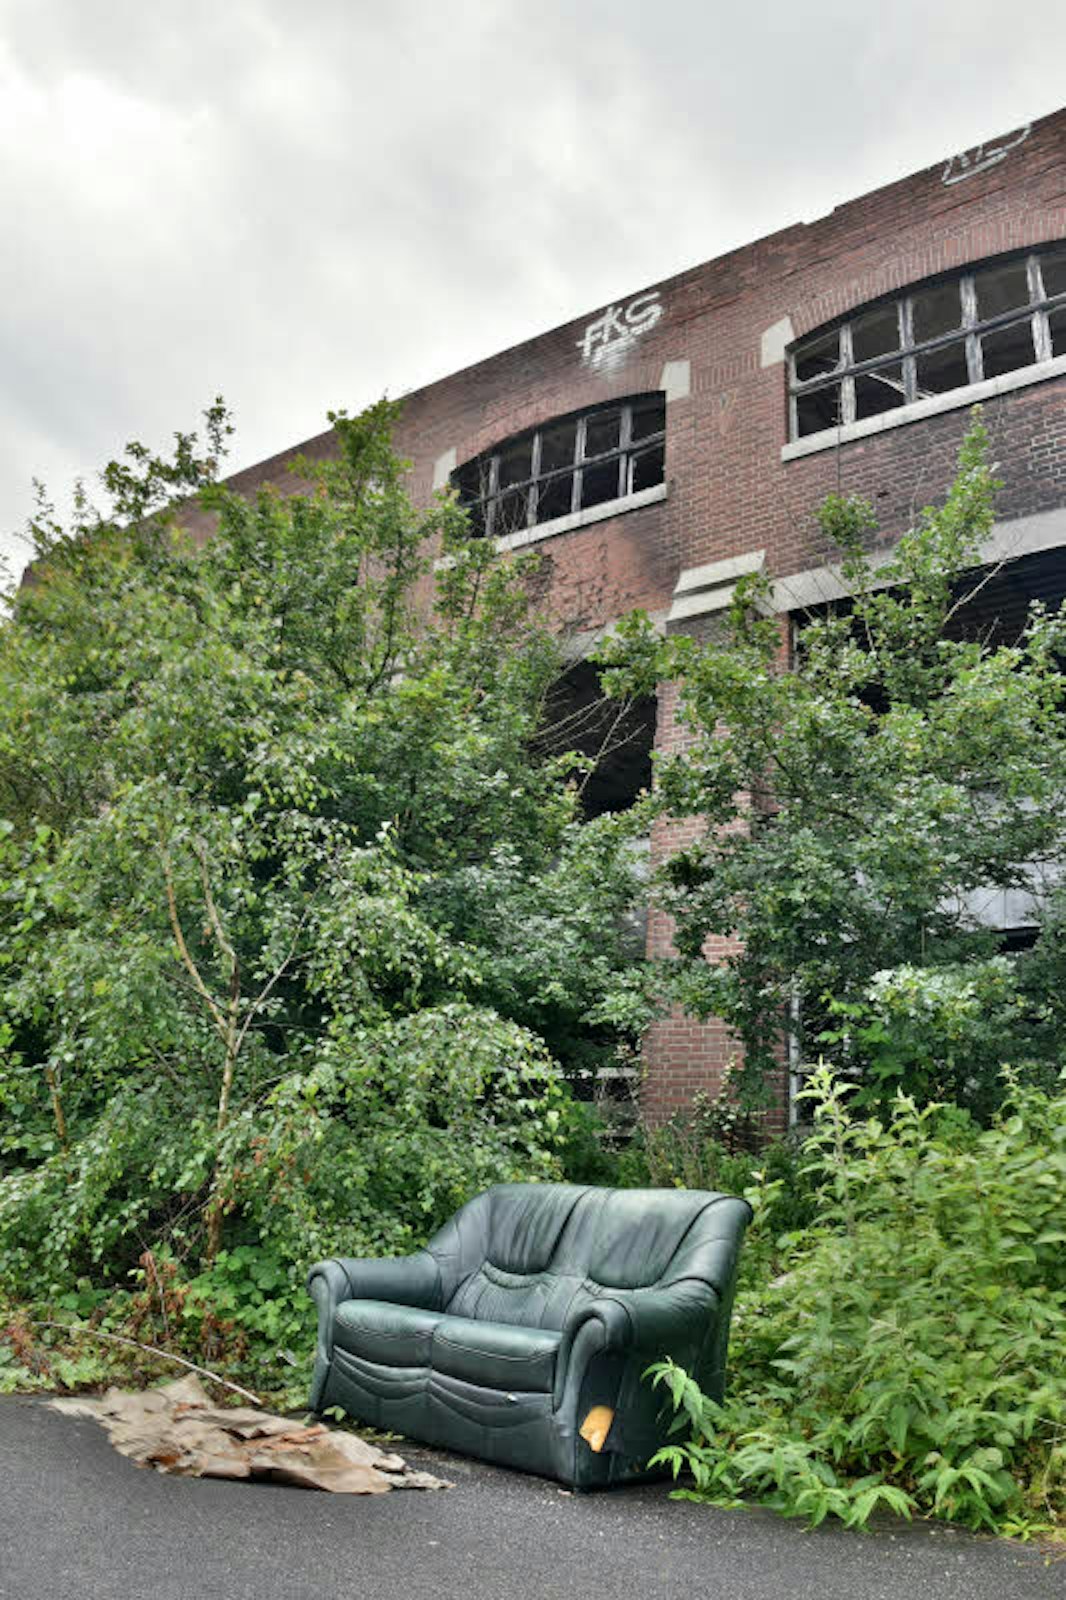 Hier kann man es sich sogar bequem machen: Unbekannte haben vor dem Hauptgebäude der Norton-Werke ein altes Sofa abgestellt.